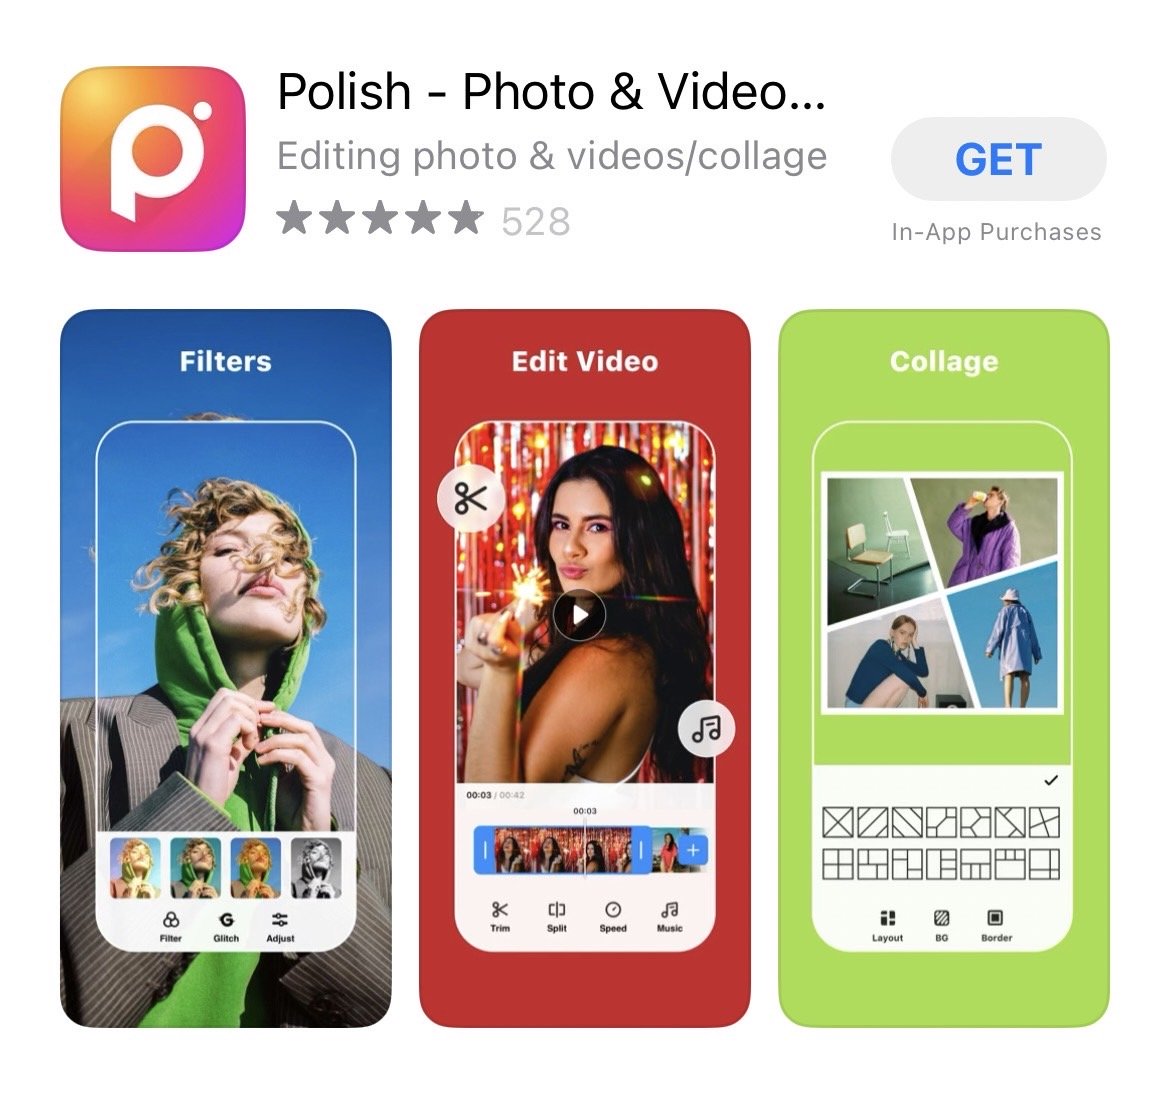 แอปตัดต่อ Polish - Photo Editor